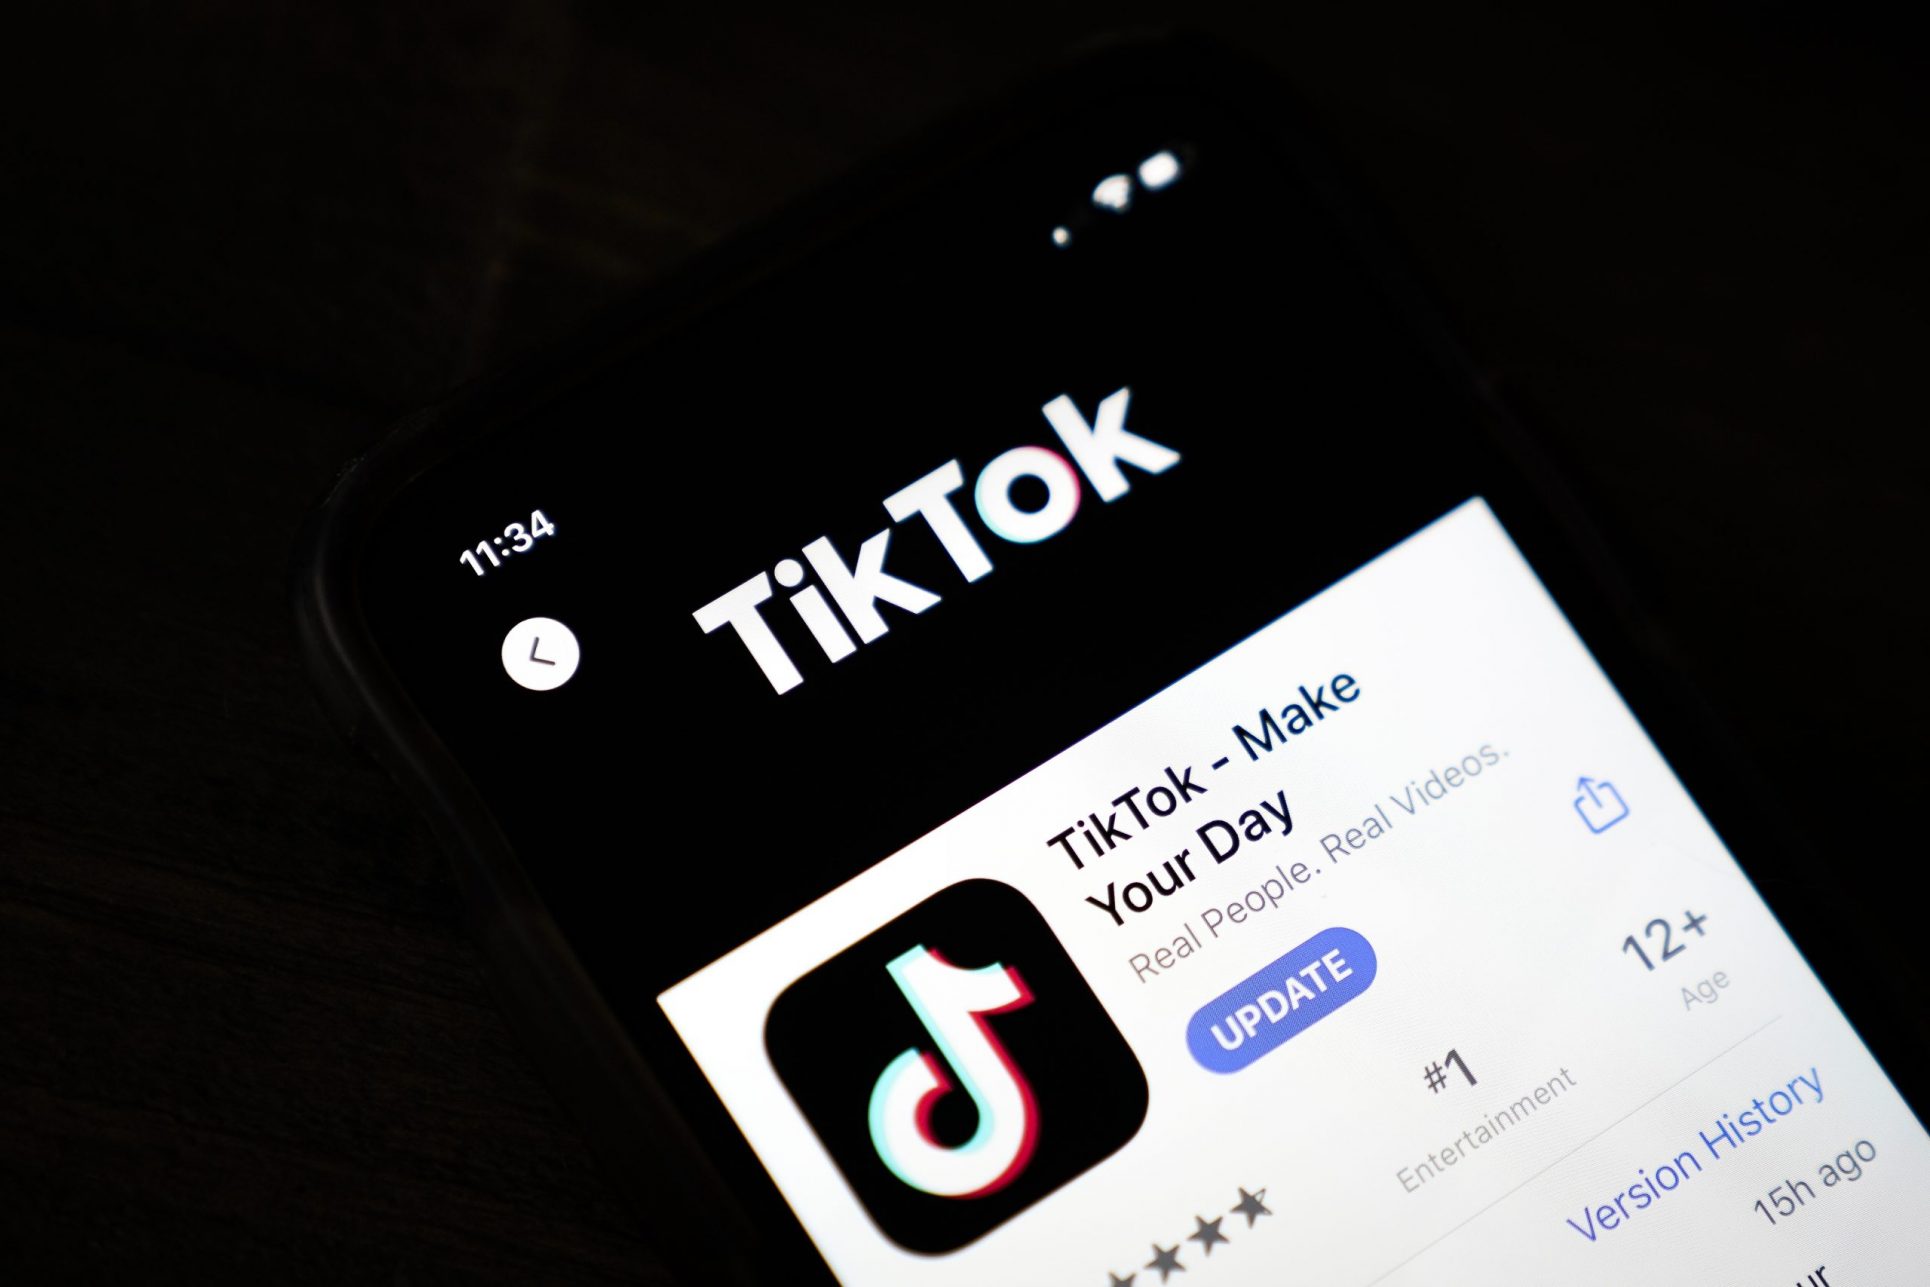 TikTok: por qué Estados Unidos, Canadá y la Comisión Europea prohibieron la app en sus teléfonos oficiales